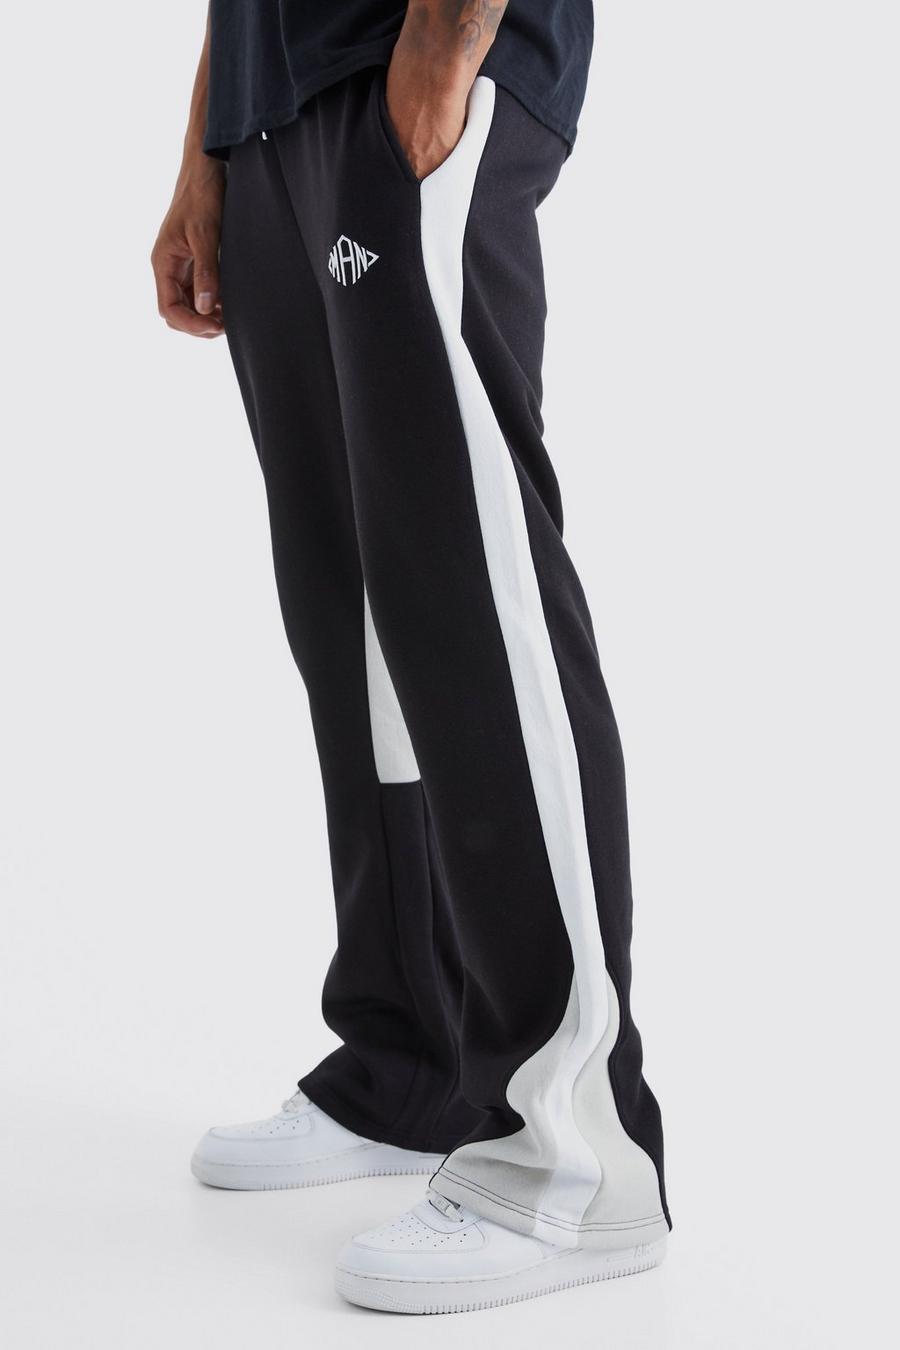 Pantaloni tuta Tall Man a blocchi di colore con inserti, Black